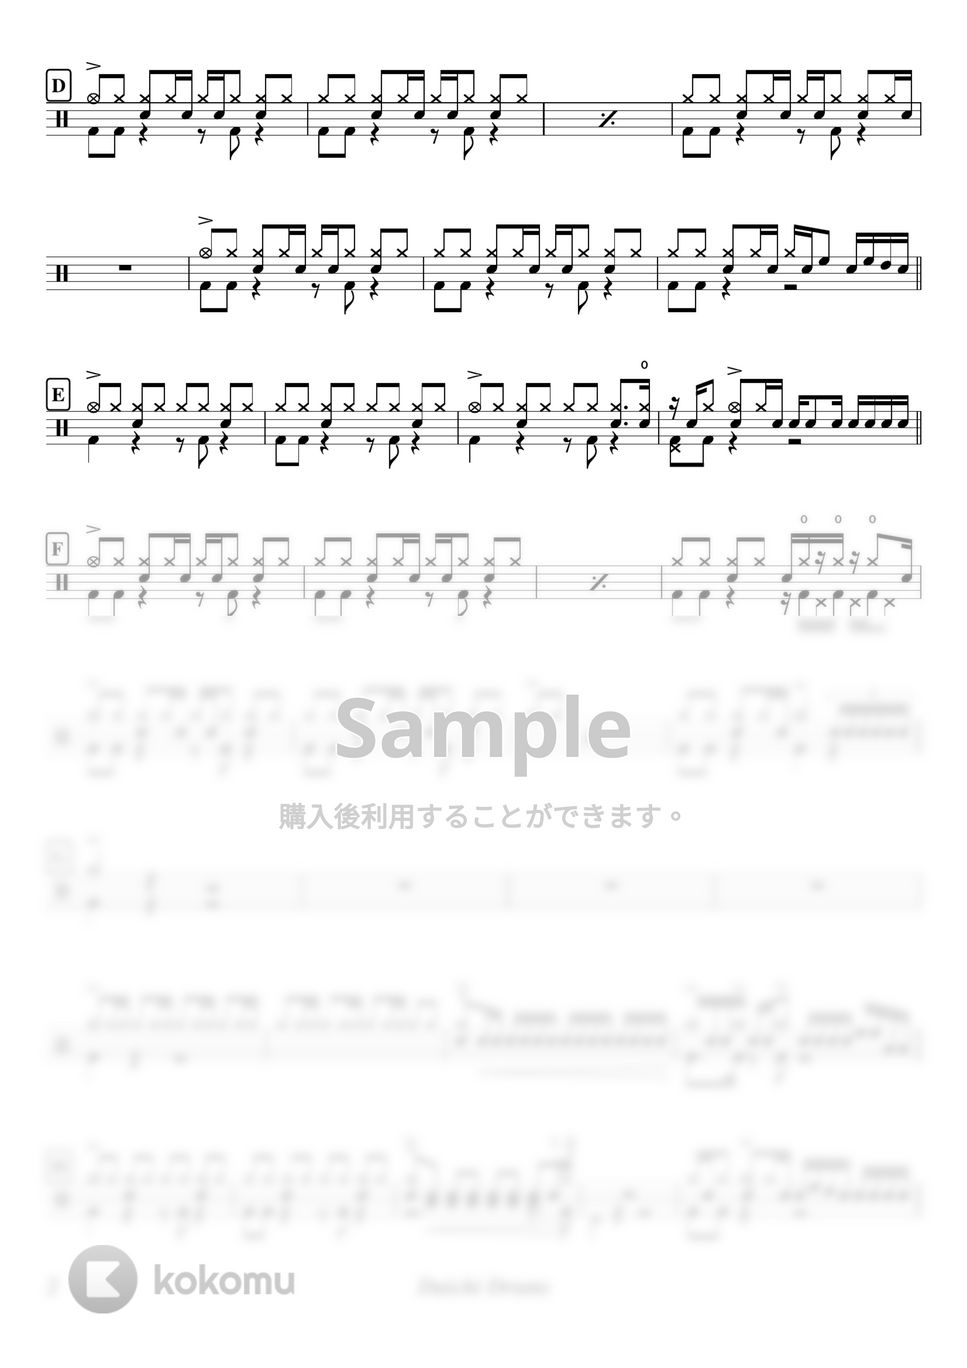 秦基博 - Q & A by Daichi Drums